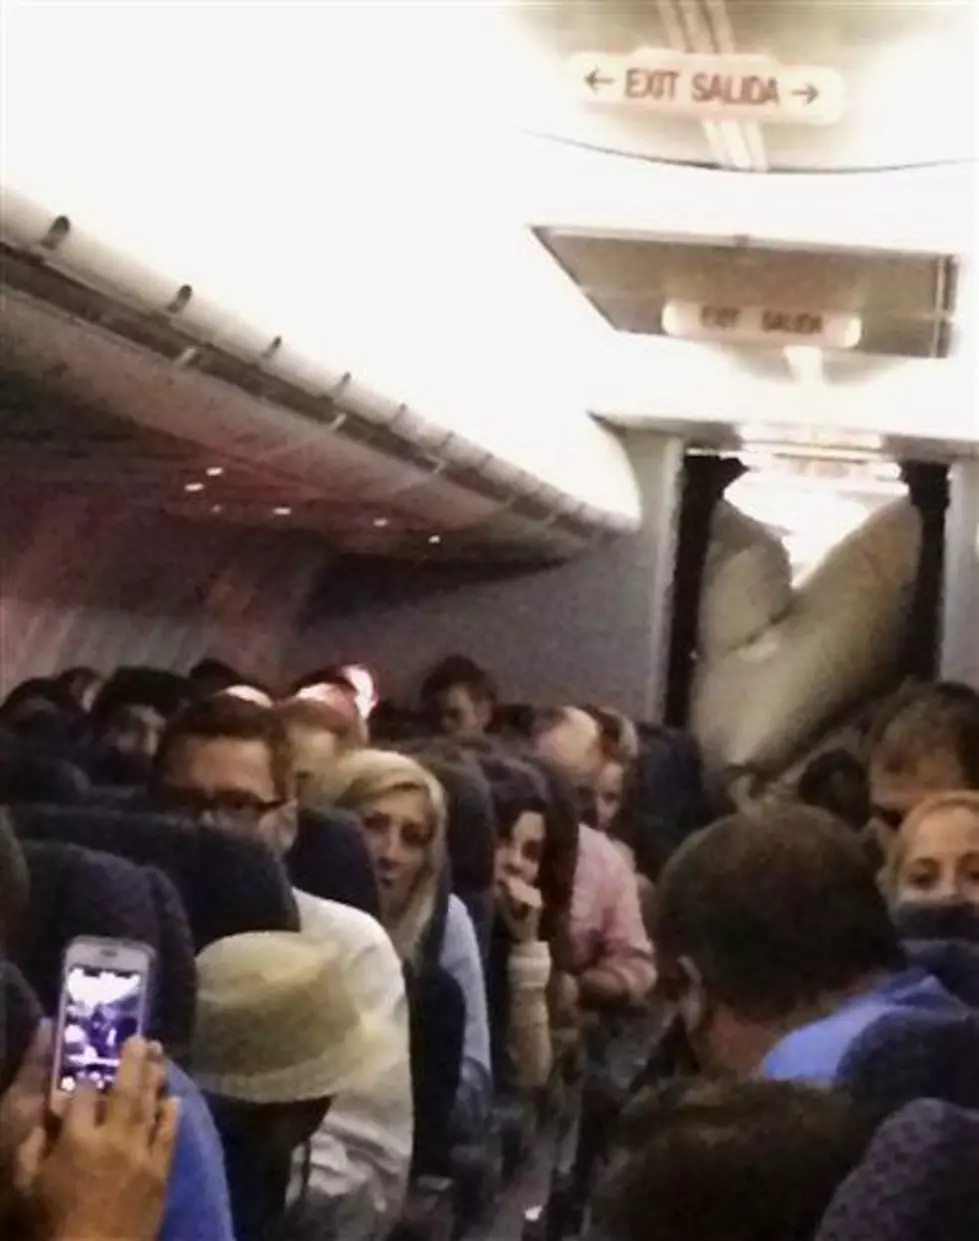 United plane&#8217;s evacuation slide deploys mid-flight